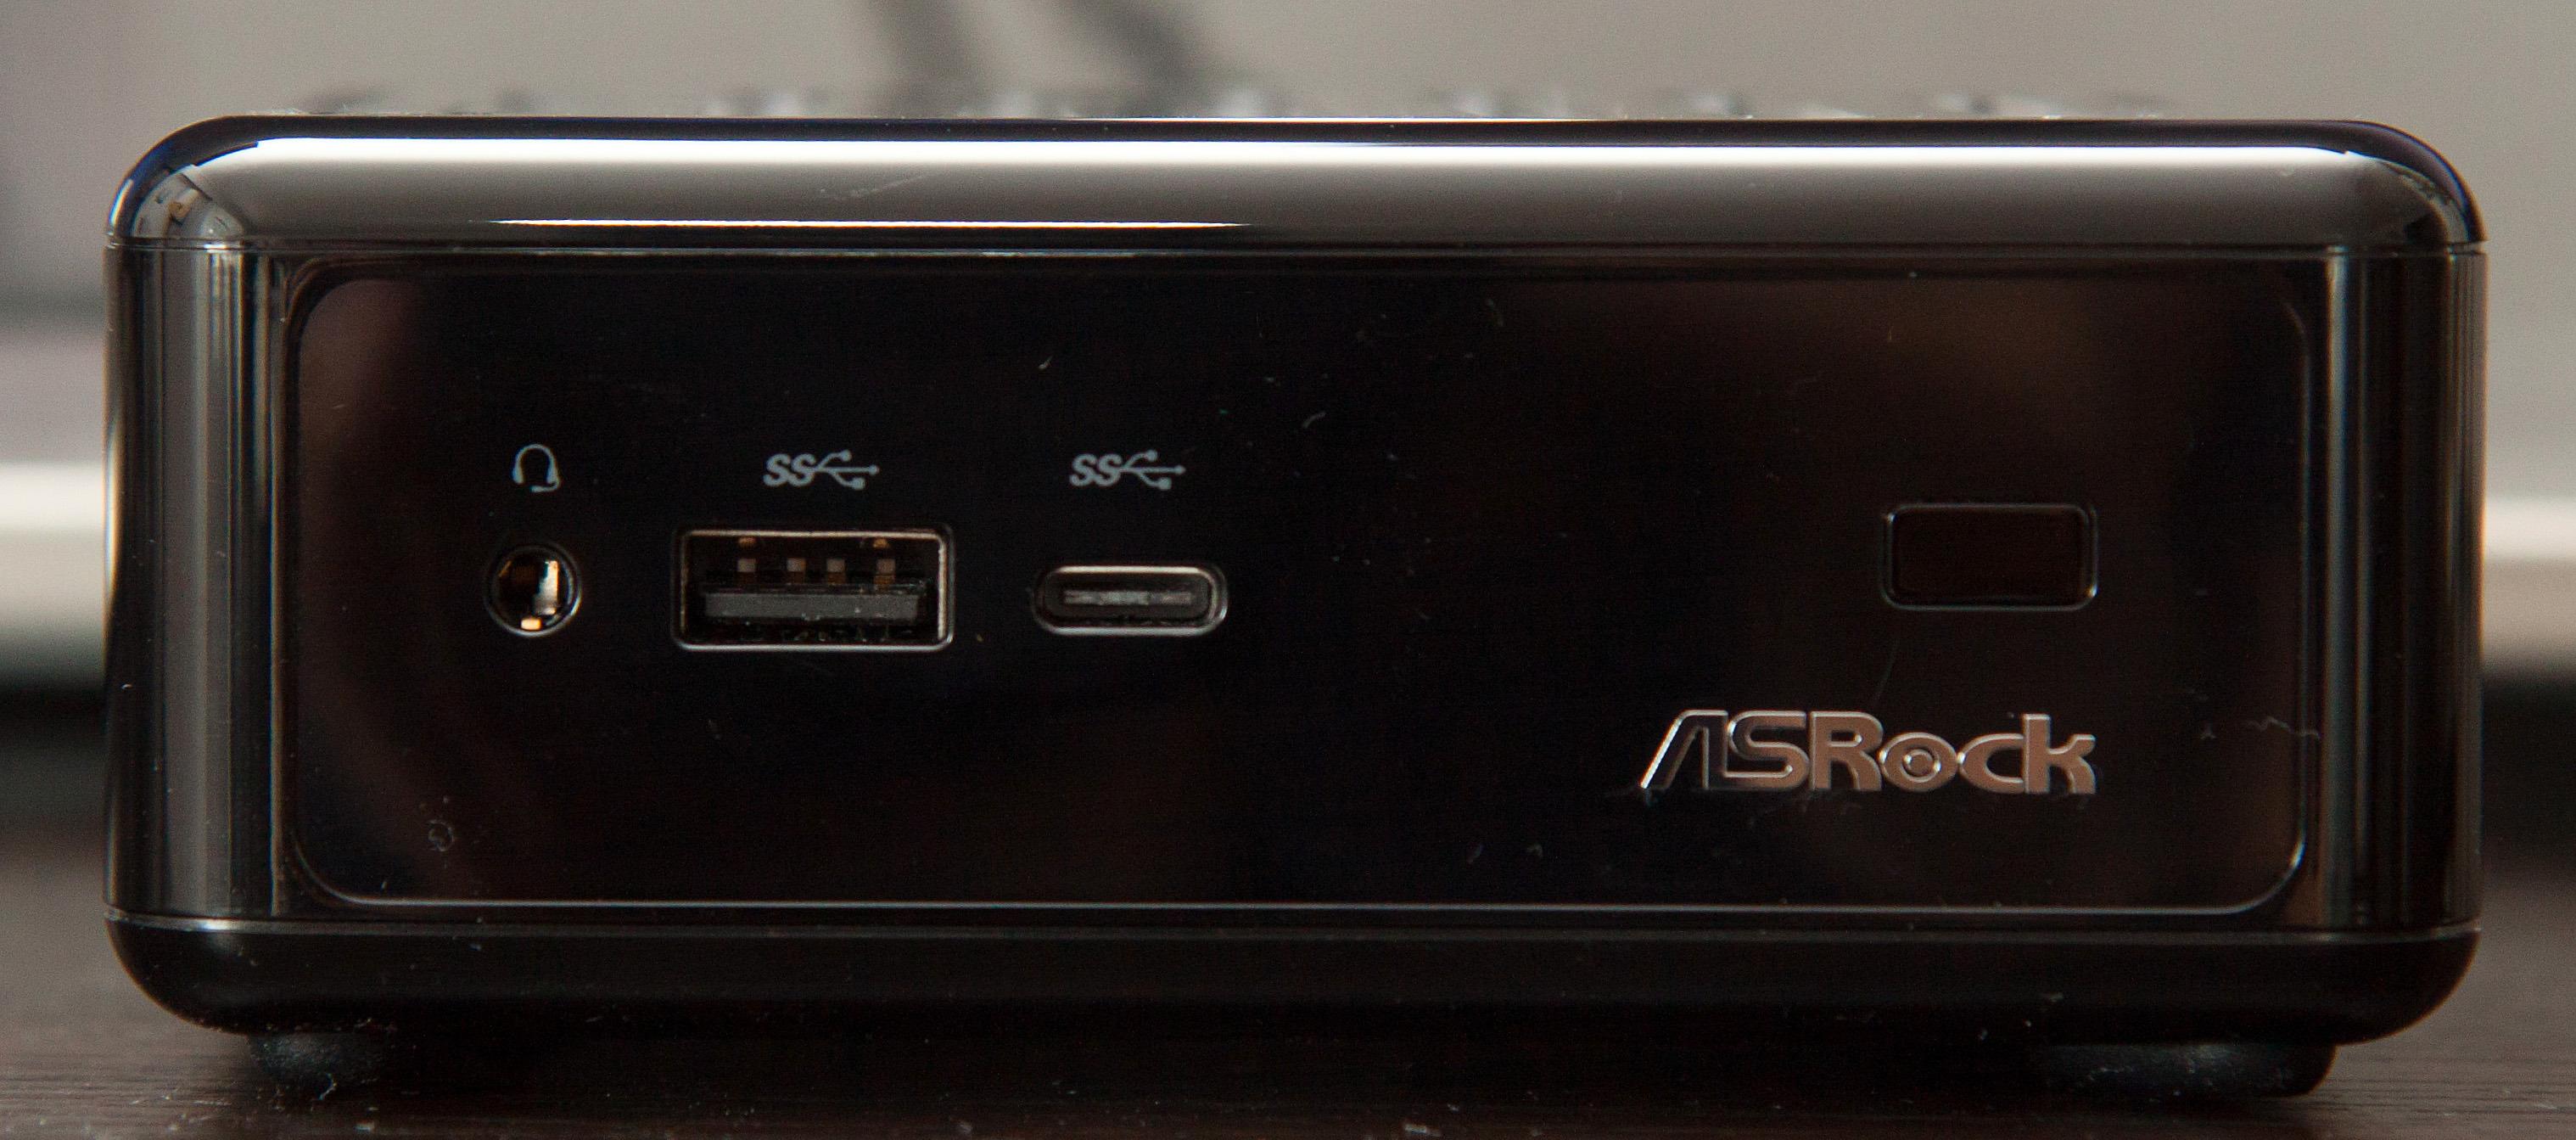 Foran er det både en vanlig USB 3.0-kontakt og en Type-C-kontakt. Foto: Kurt Lekanger, Tek.no